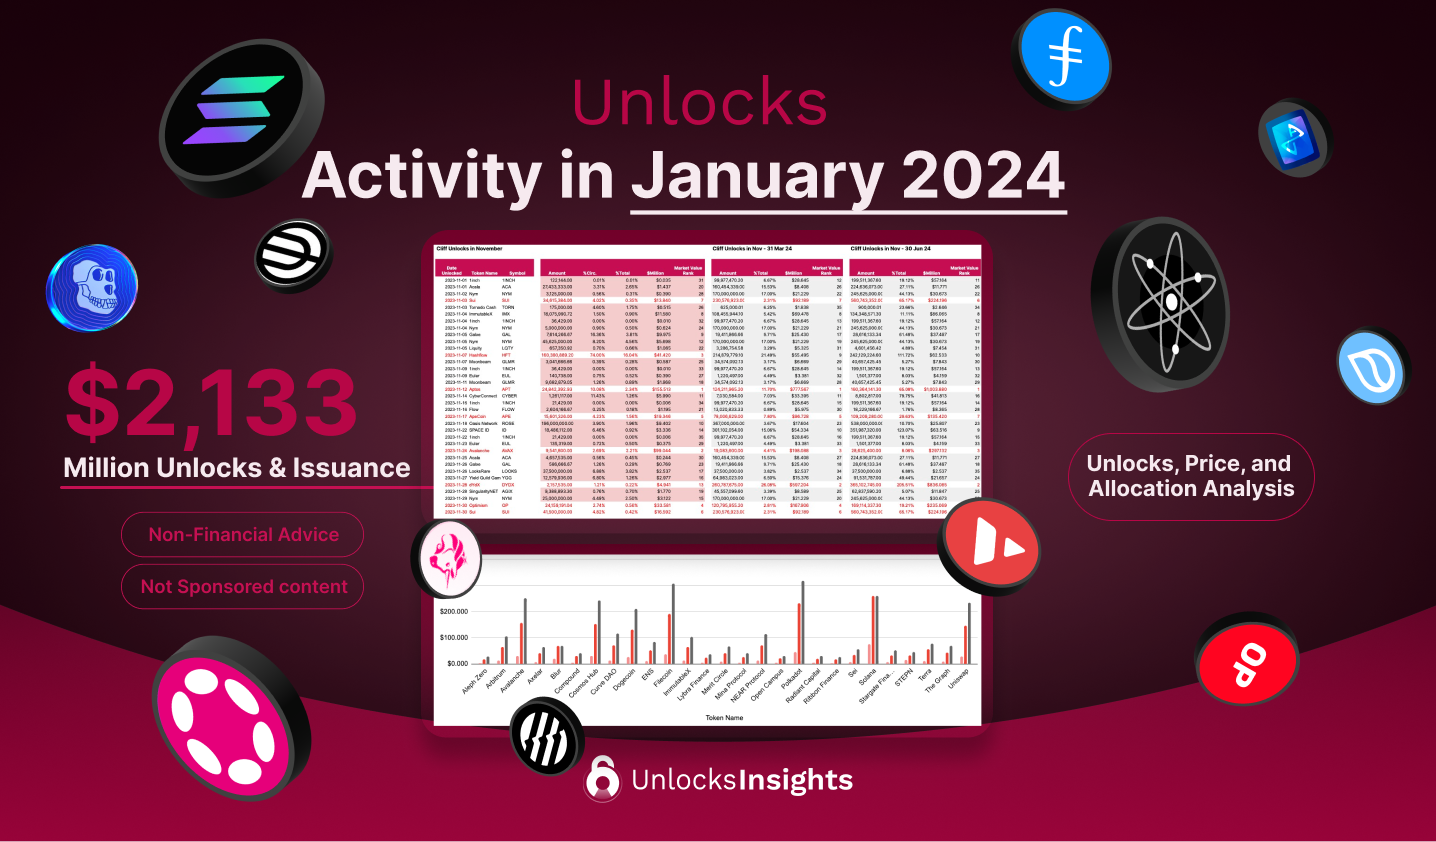 Unlocks Activity in January 2024